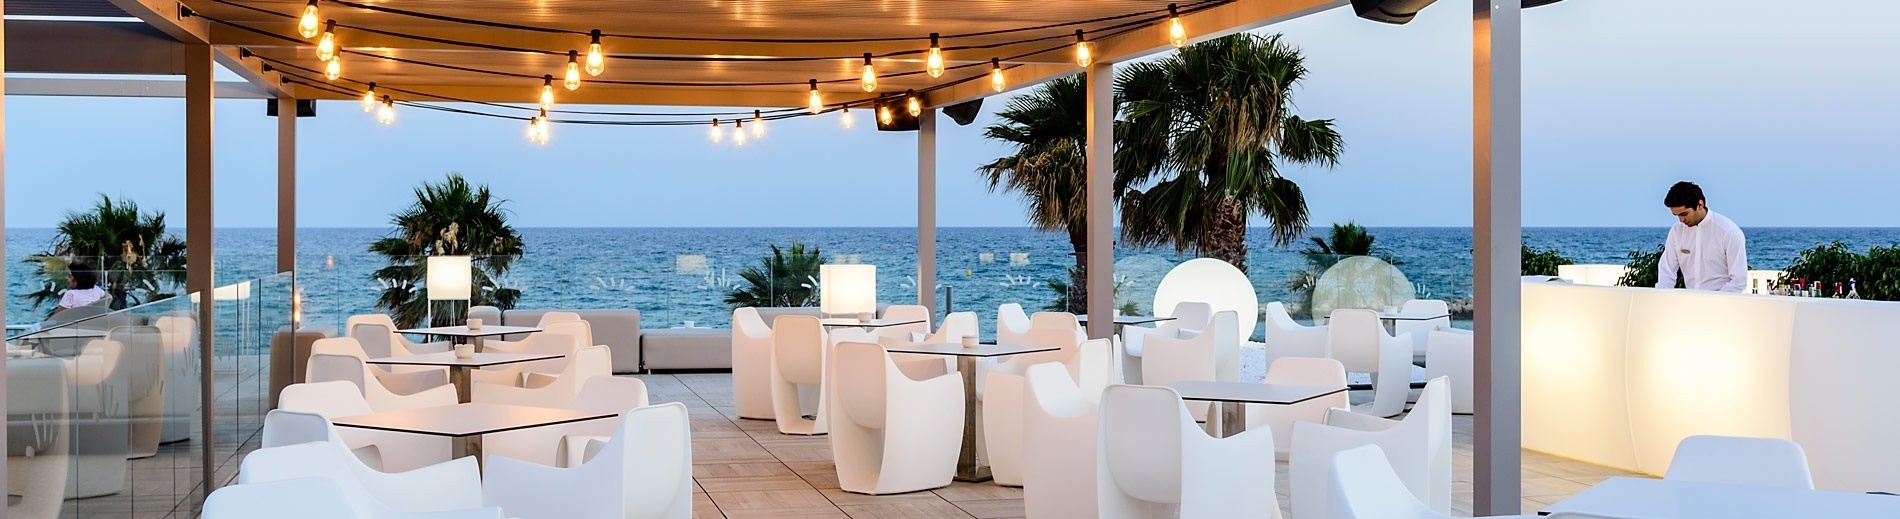 un restaurant a l' aire lliure amb una vista al mar